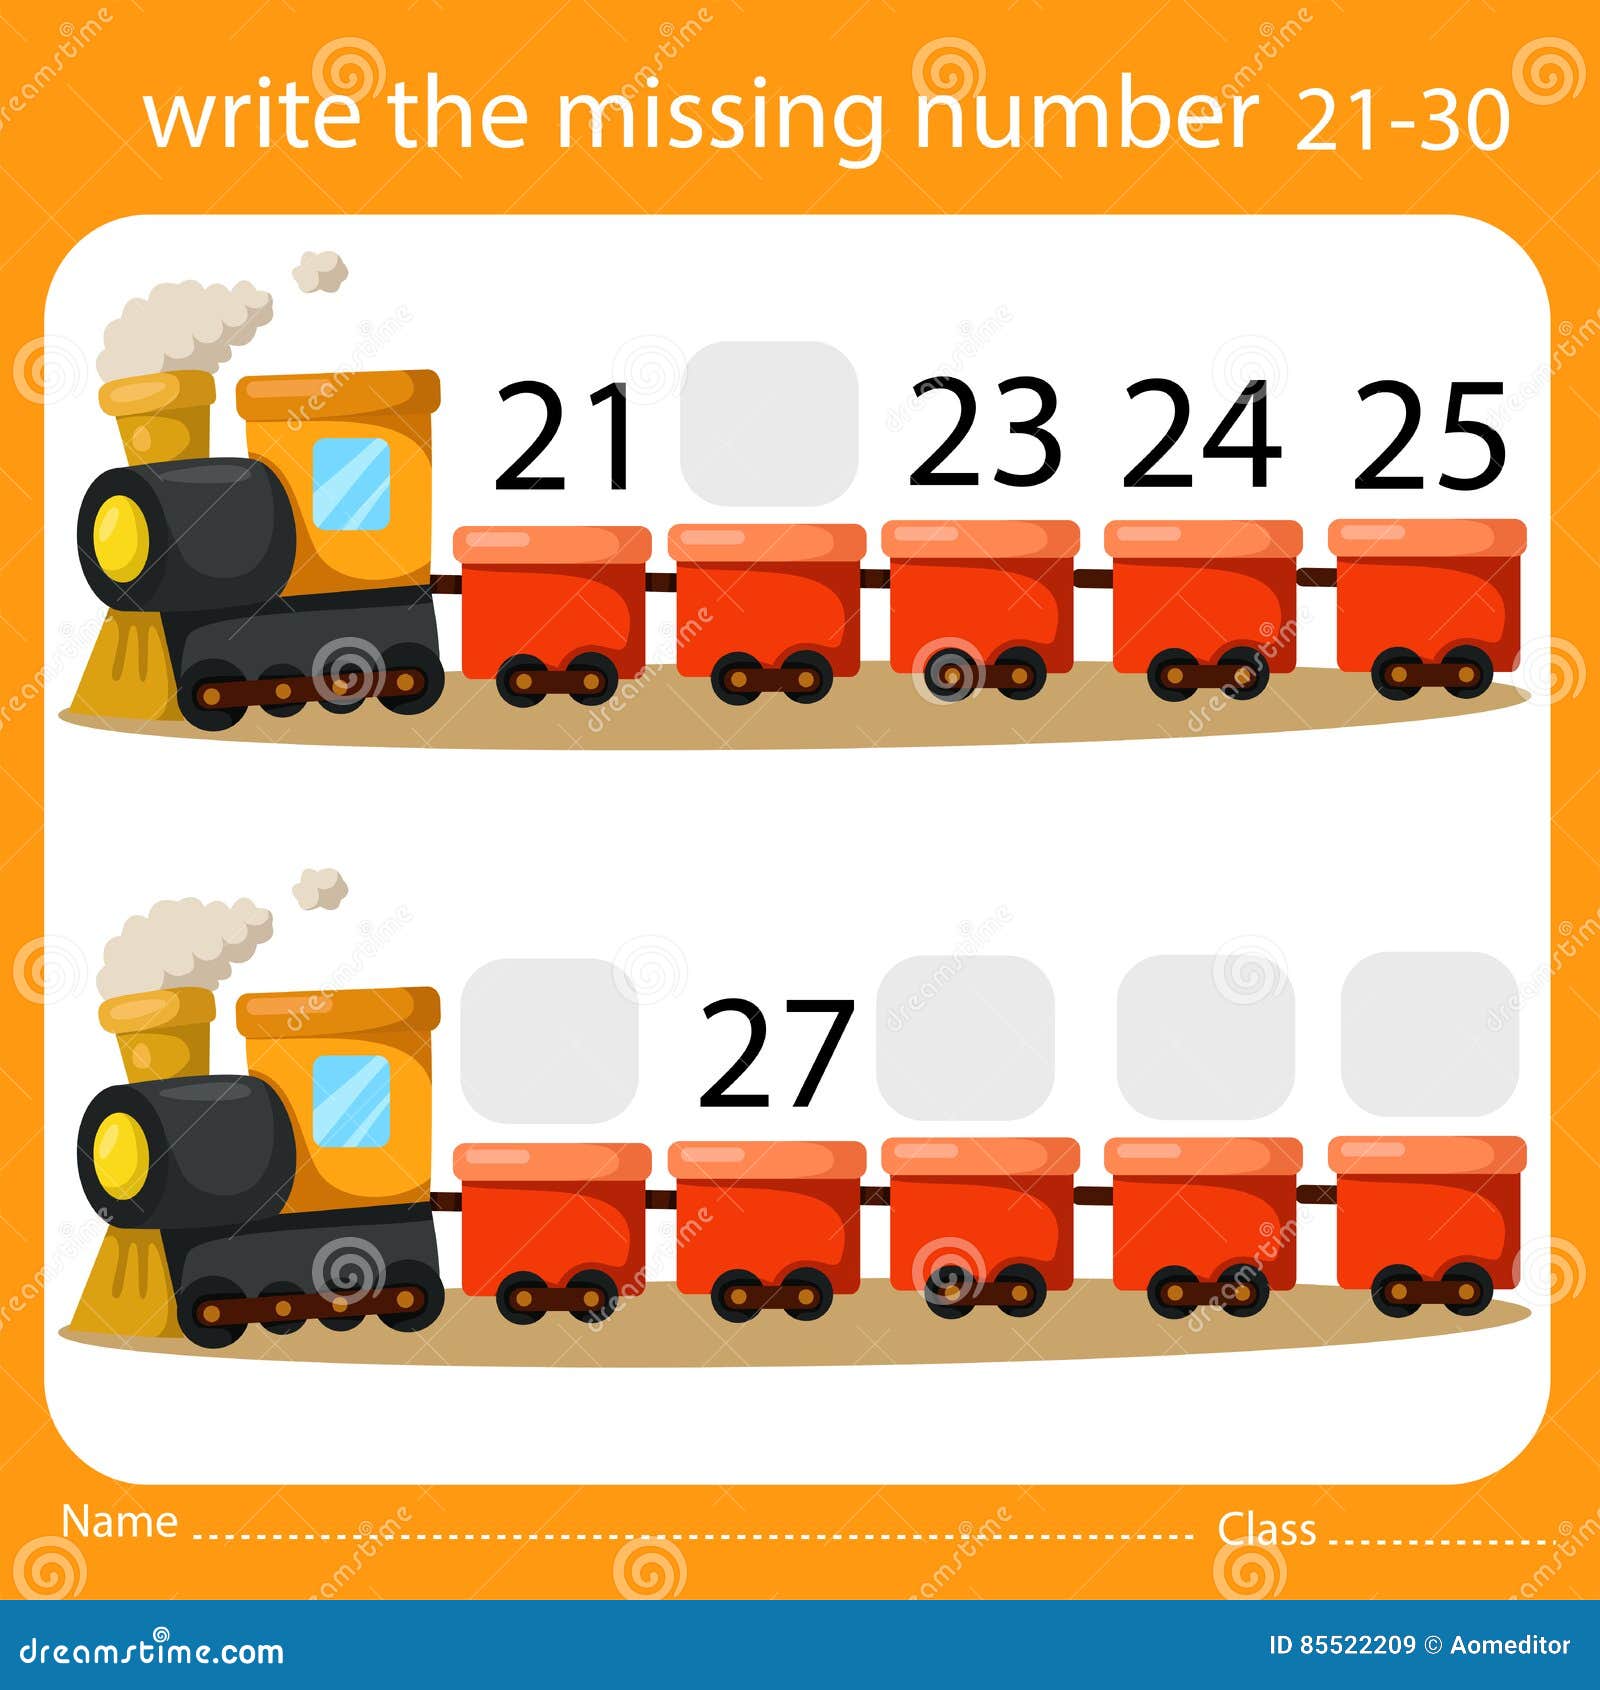 kindergarten-math-worksheets-numbers-21-30